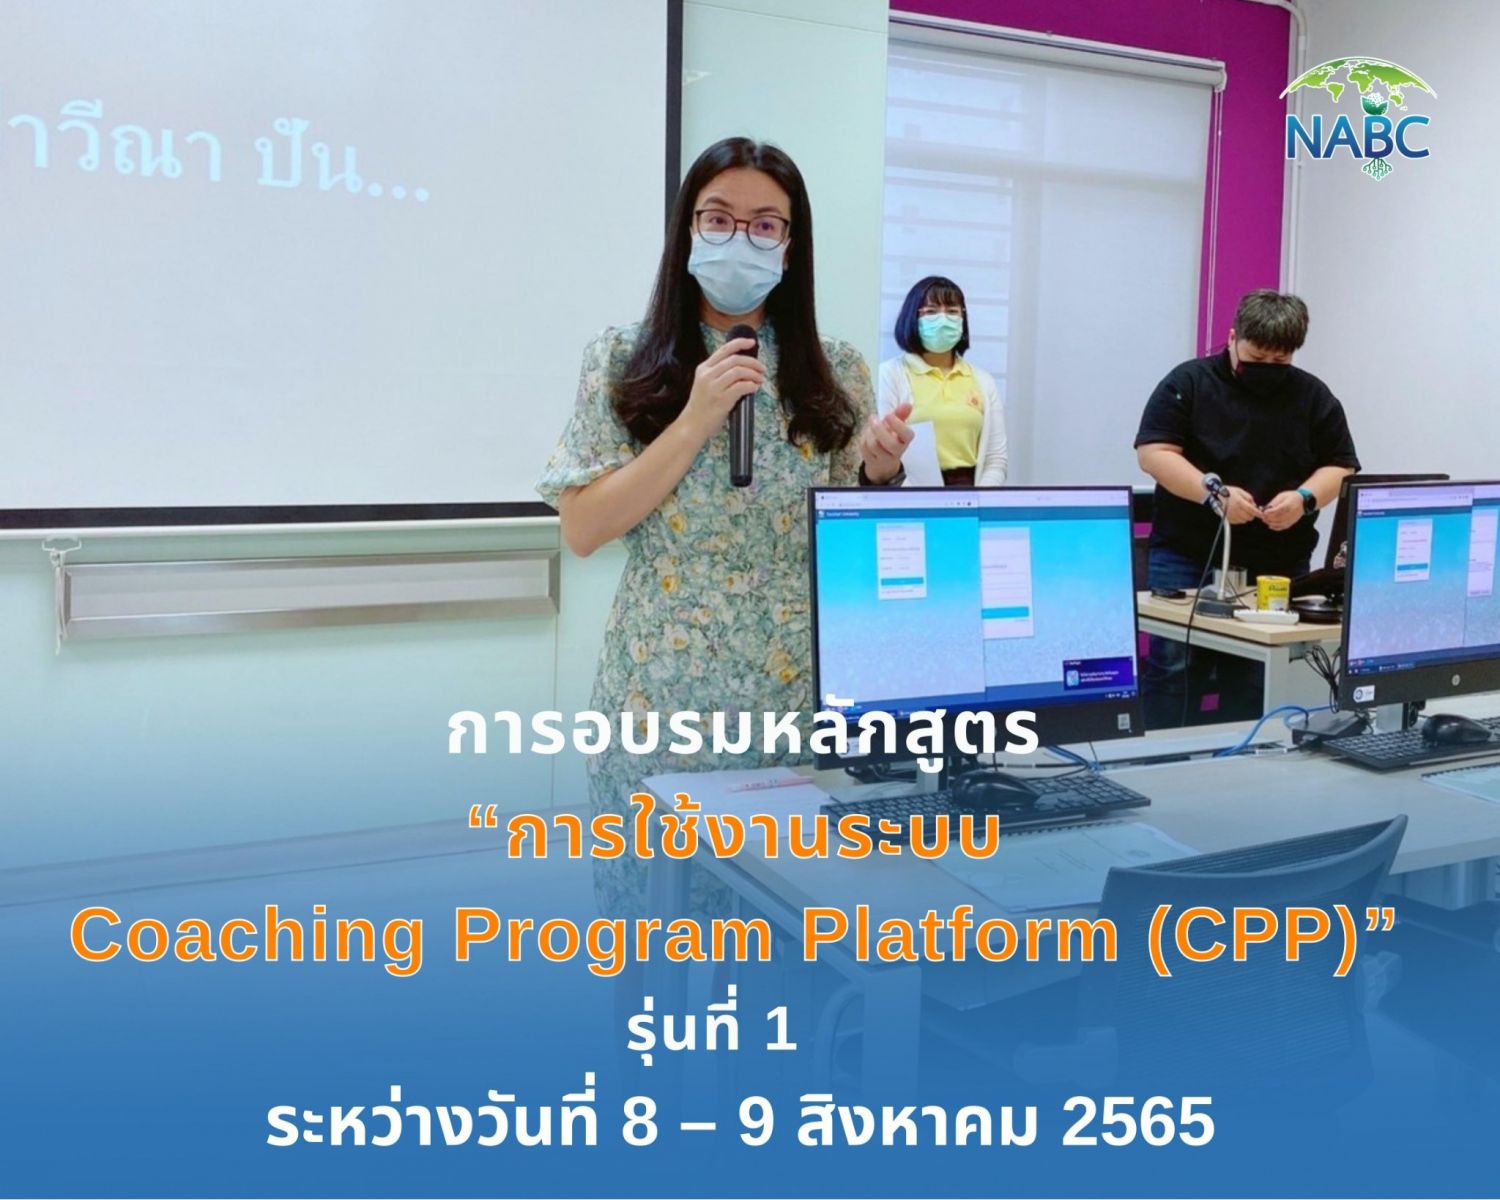 การอบรมหลักสูตร “การใช้งานระบบ Coaching Program Platform (CPP)” รุ่นที่ 1